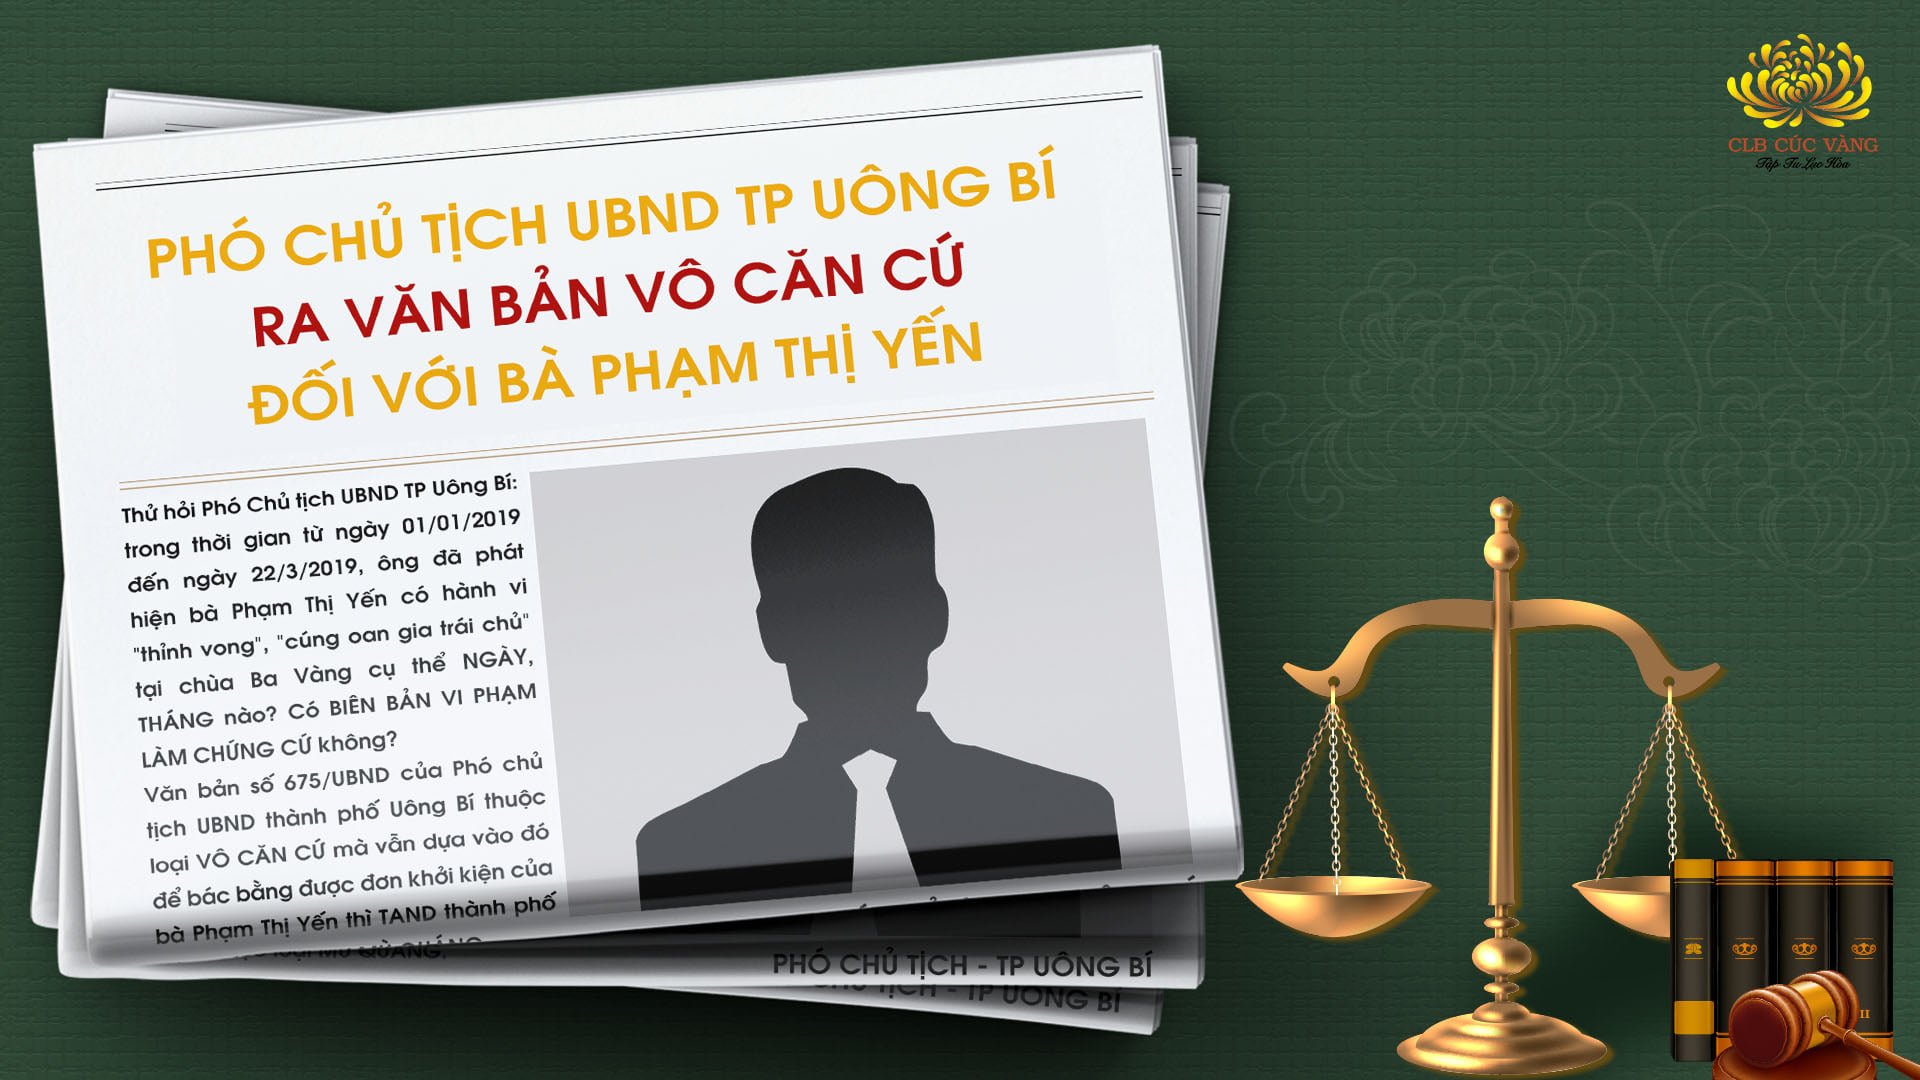 Phần 8: Tiếp tục tường thuật phiên tòa: Bà Phạm Thị Yến kiện Chủ tịch UBND phường Quang Trung